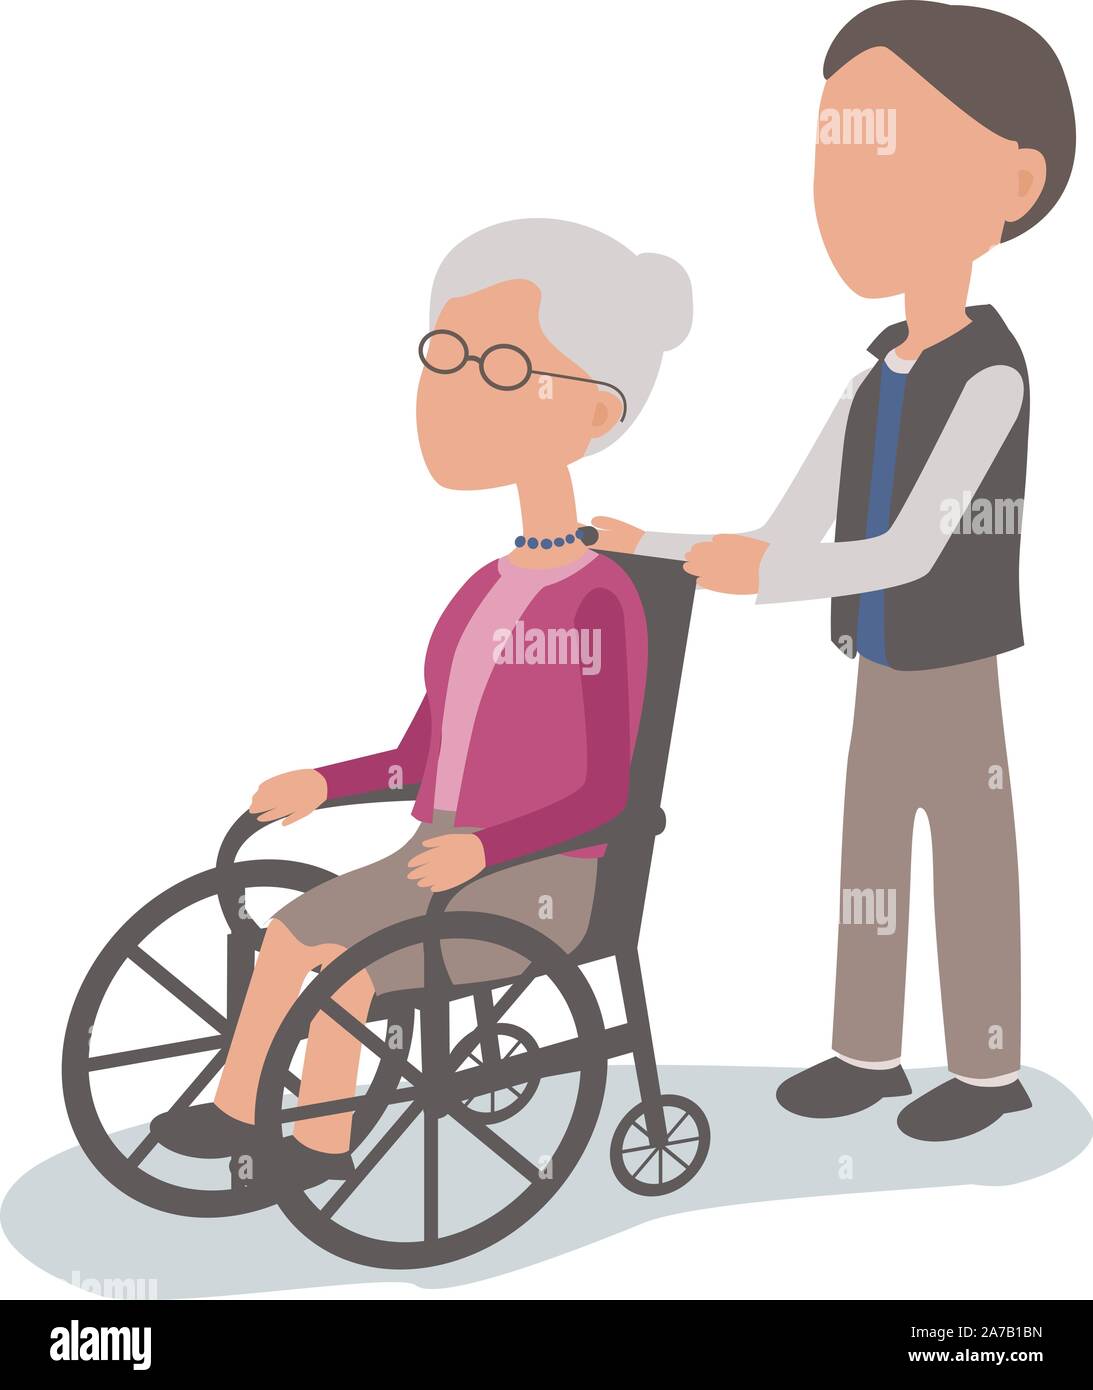 Sohn helfen ältere Frau im Rollstuhl - Vektor zeichen Körper Teile gegliedert und einfach zu bearbeiten - begrenzte Palette Stock Vektor